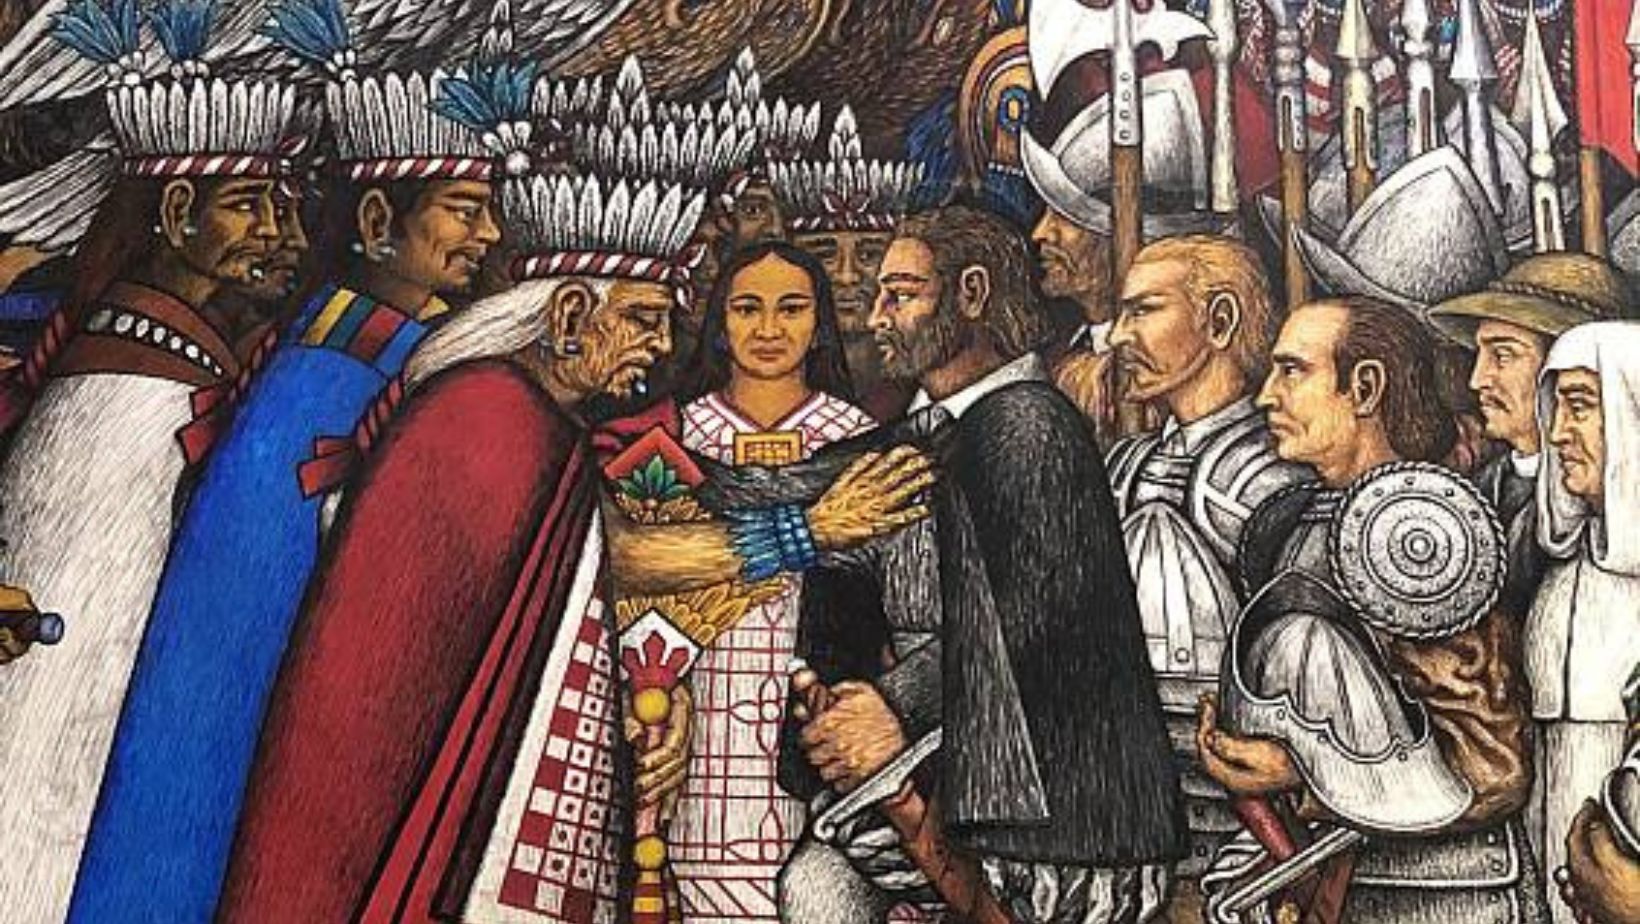 La Malinche Role in Aztec Empire